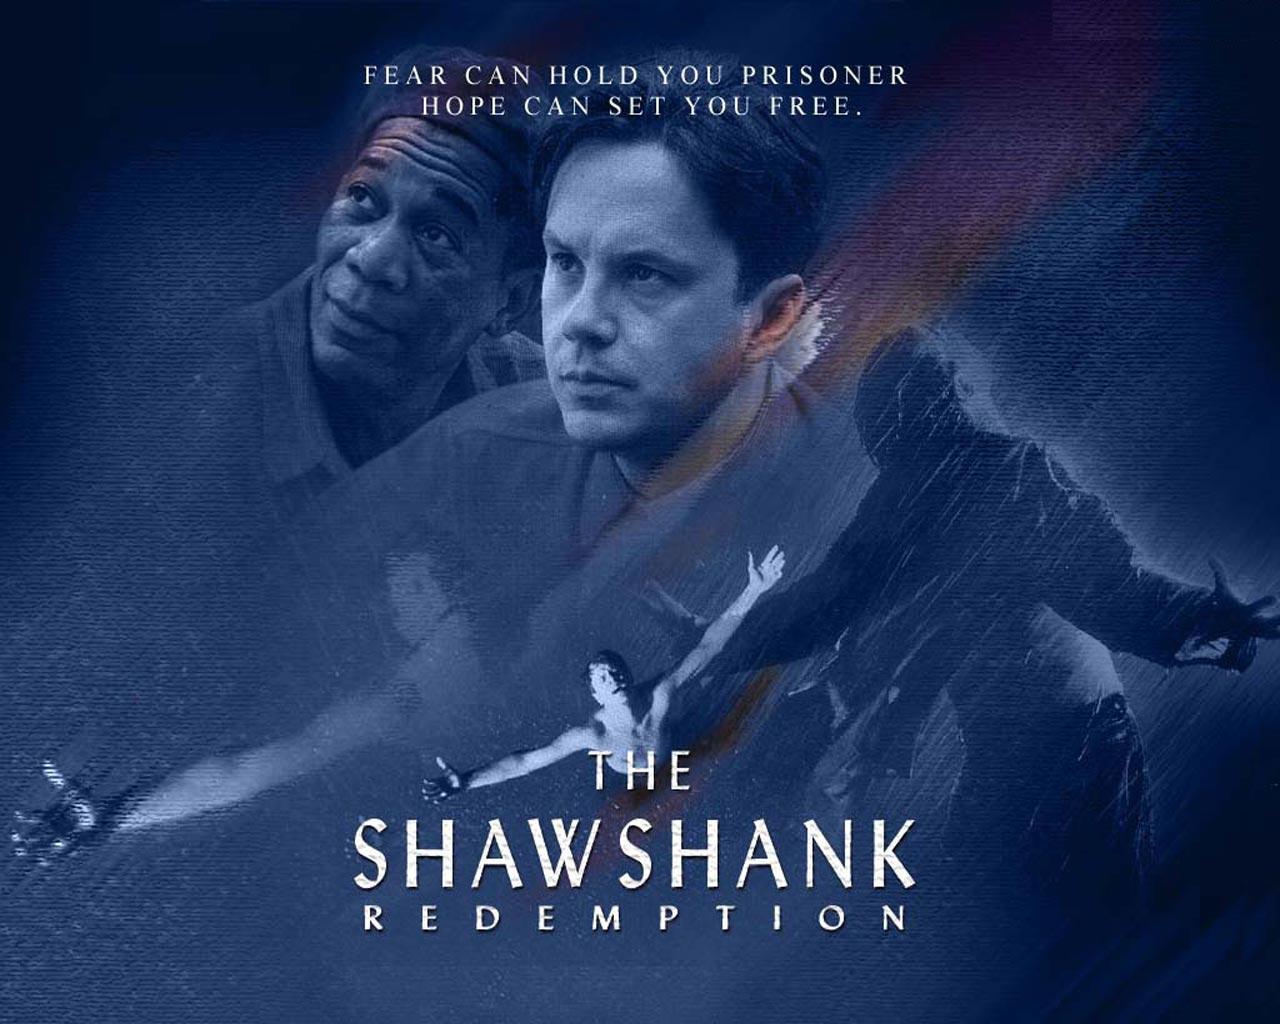 The Shawshank Redemption Wallpaper #1 1280 x 1024 